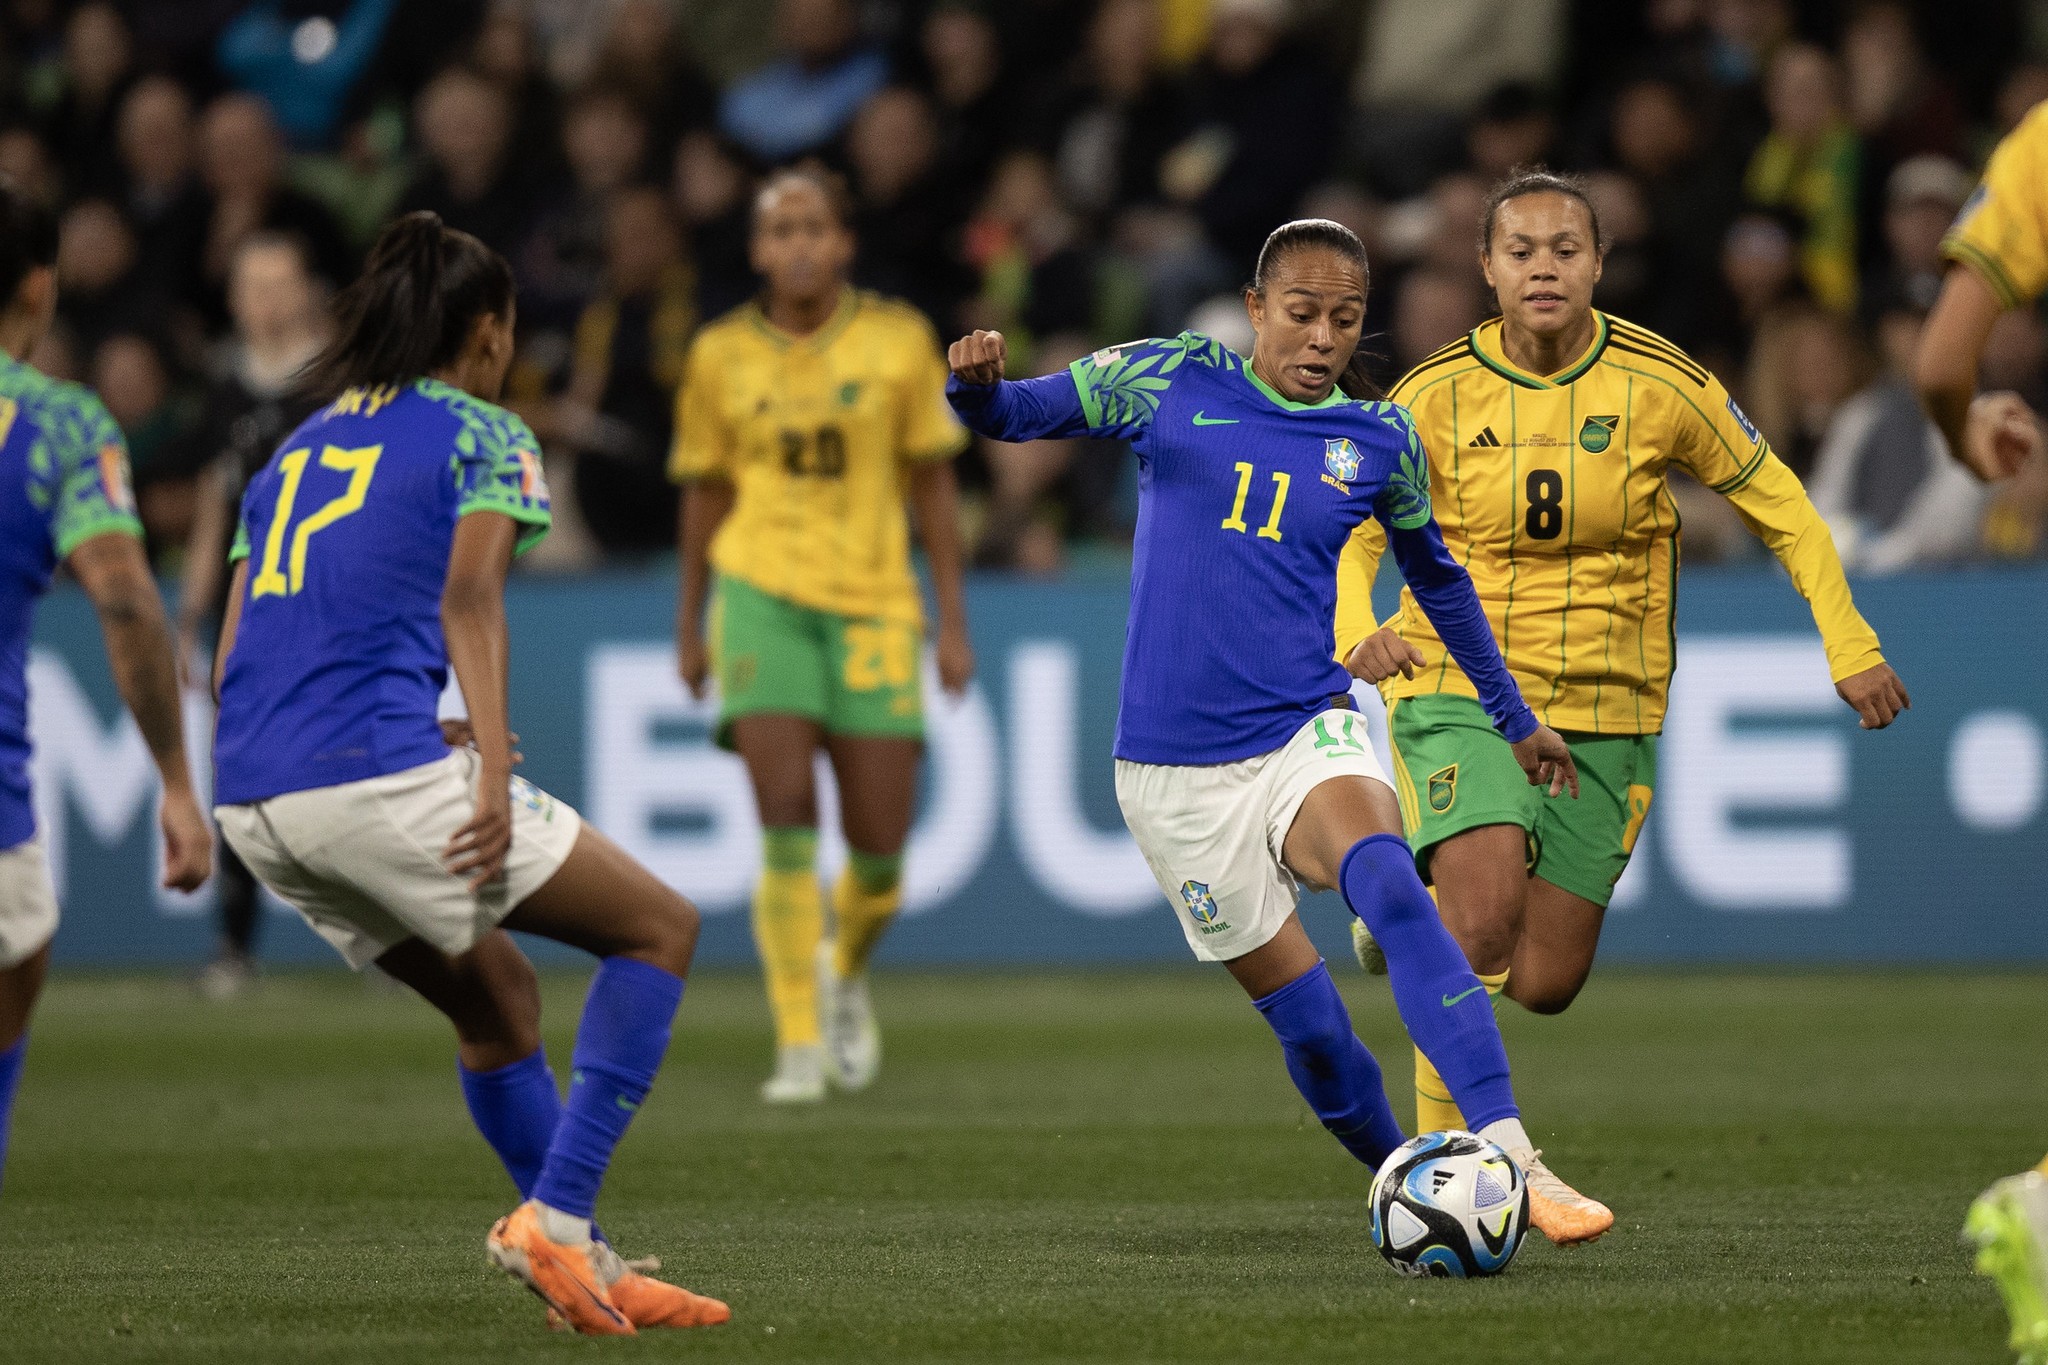 Atacante piauiense Adriana é convocada para seleção brasileira para Copa do  Mundo 2023; veja, futebol